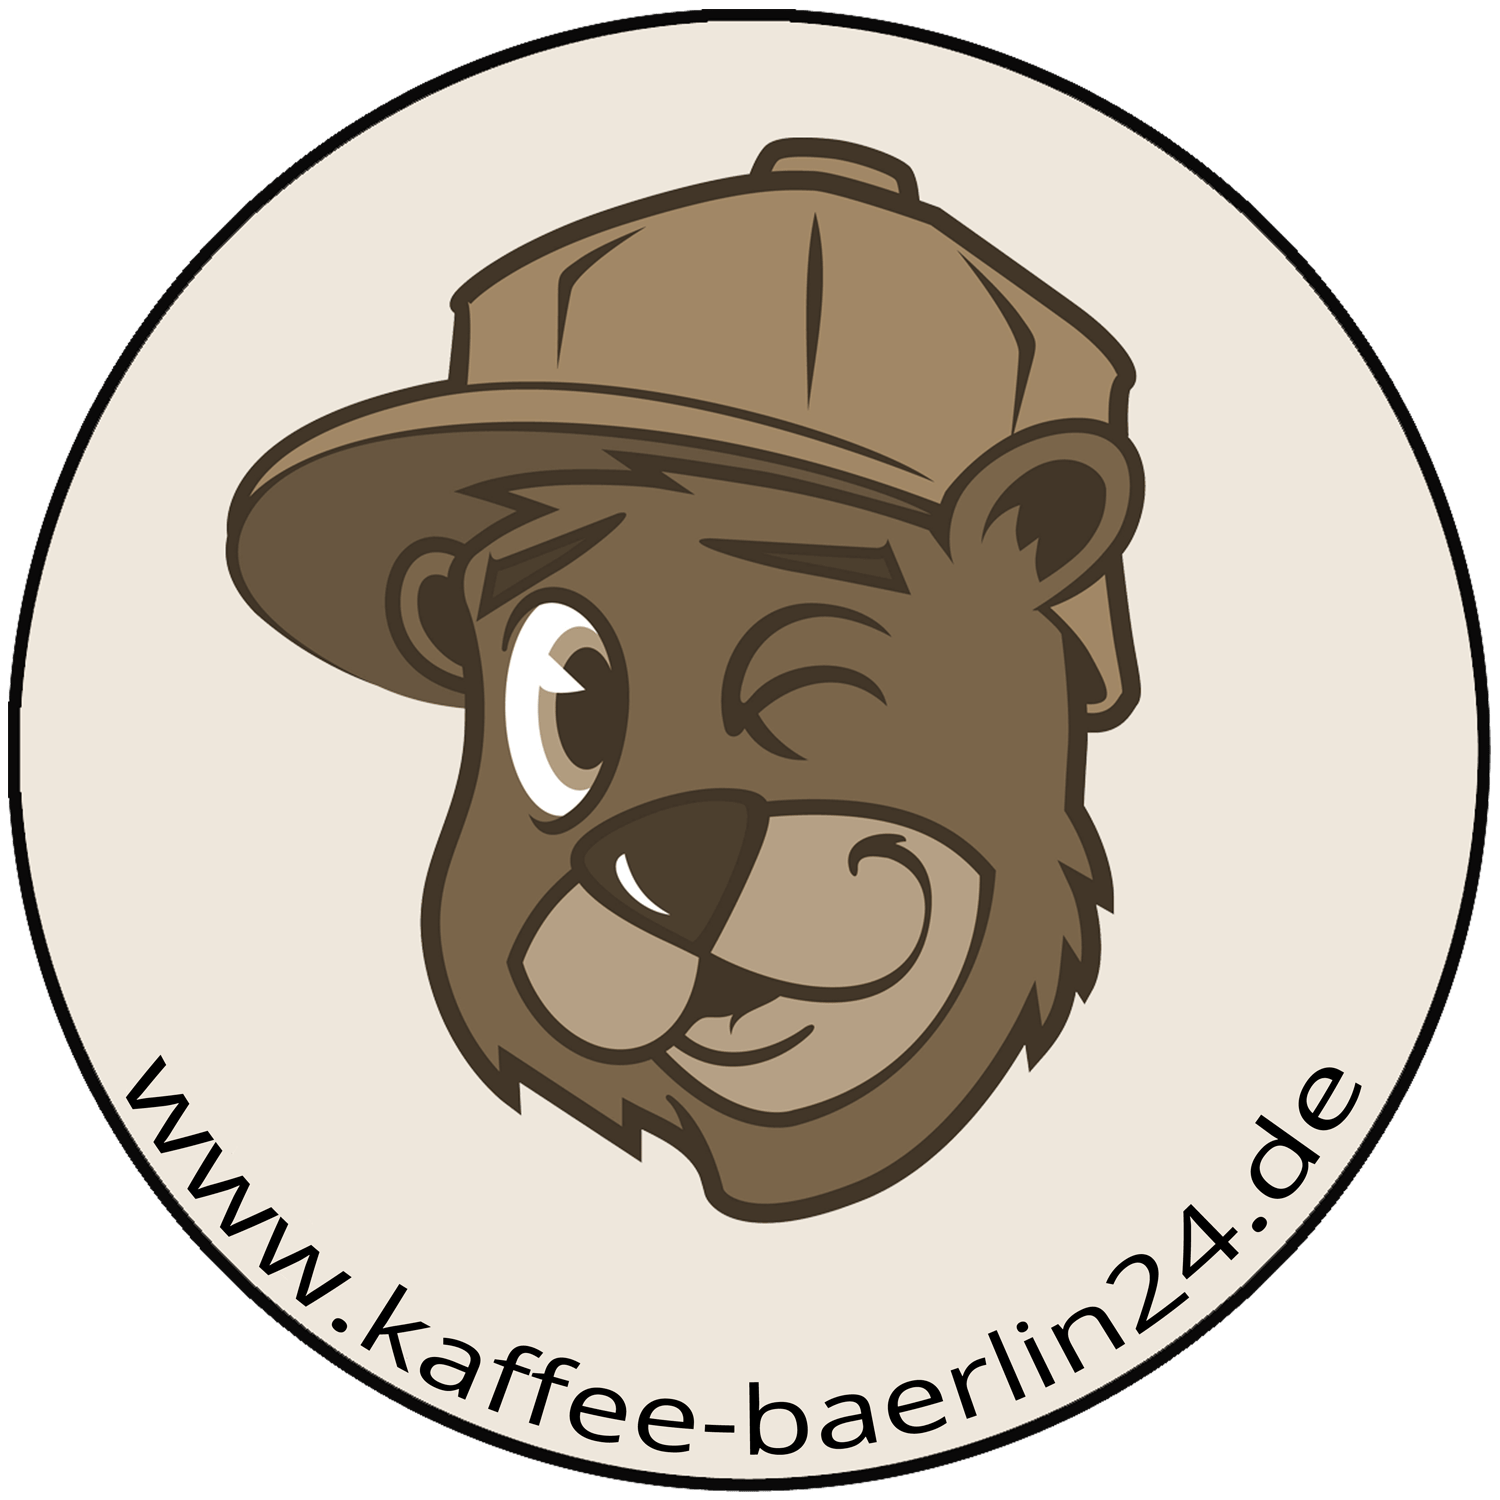 (c) Kaffee-baerlin24.de